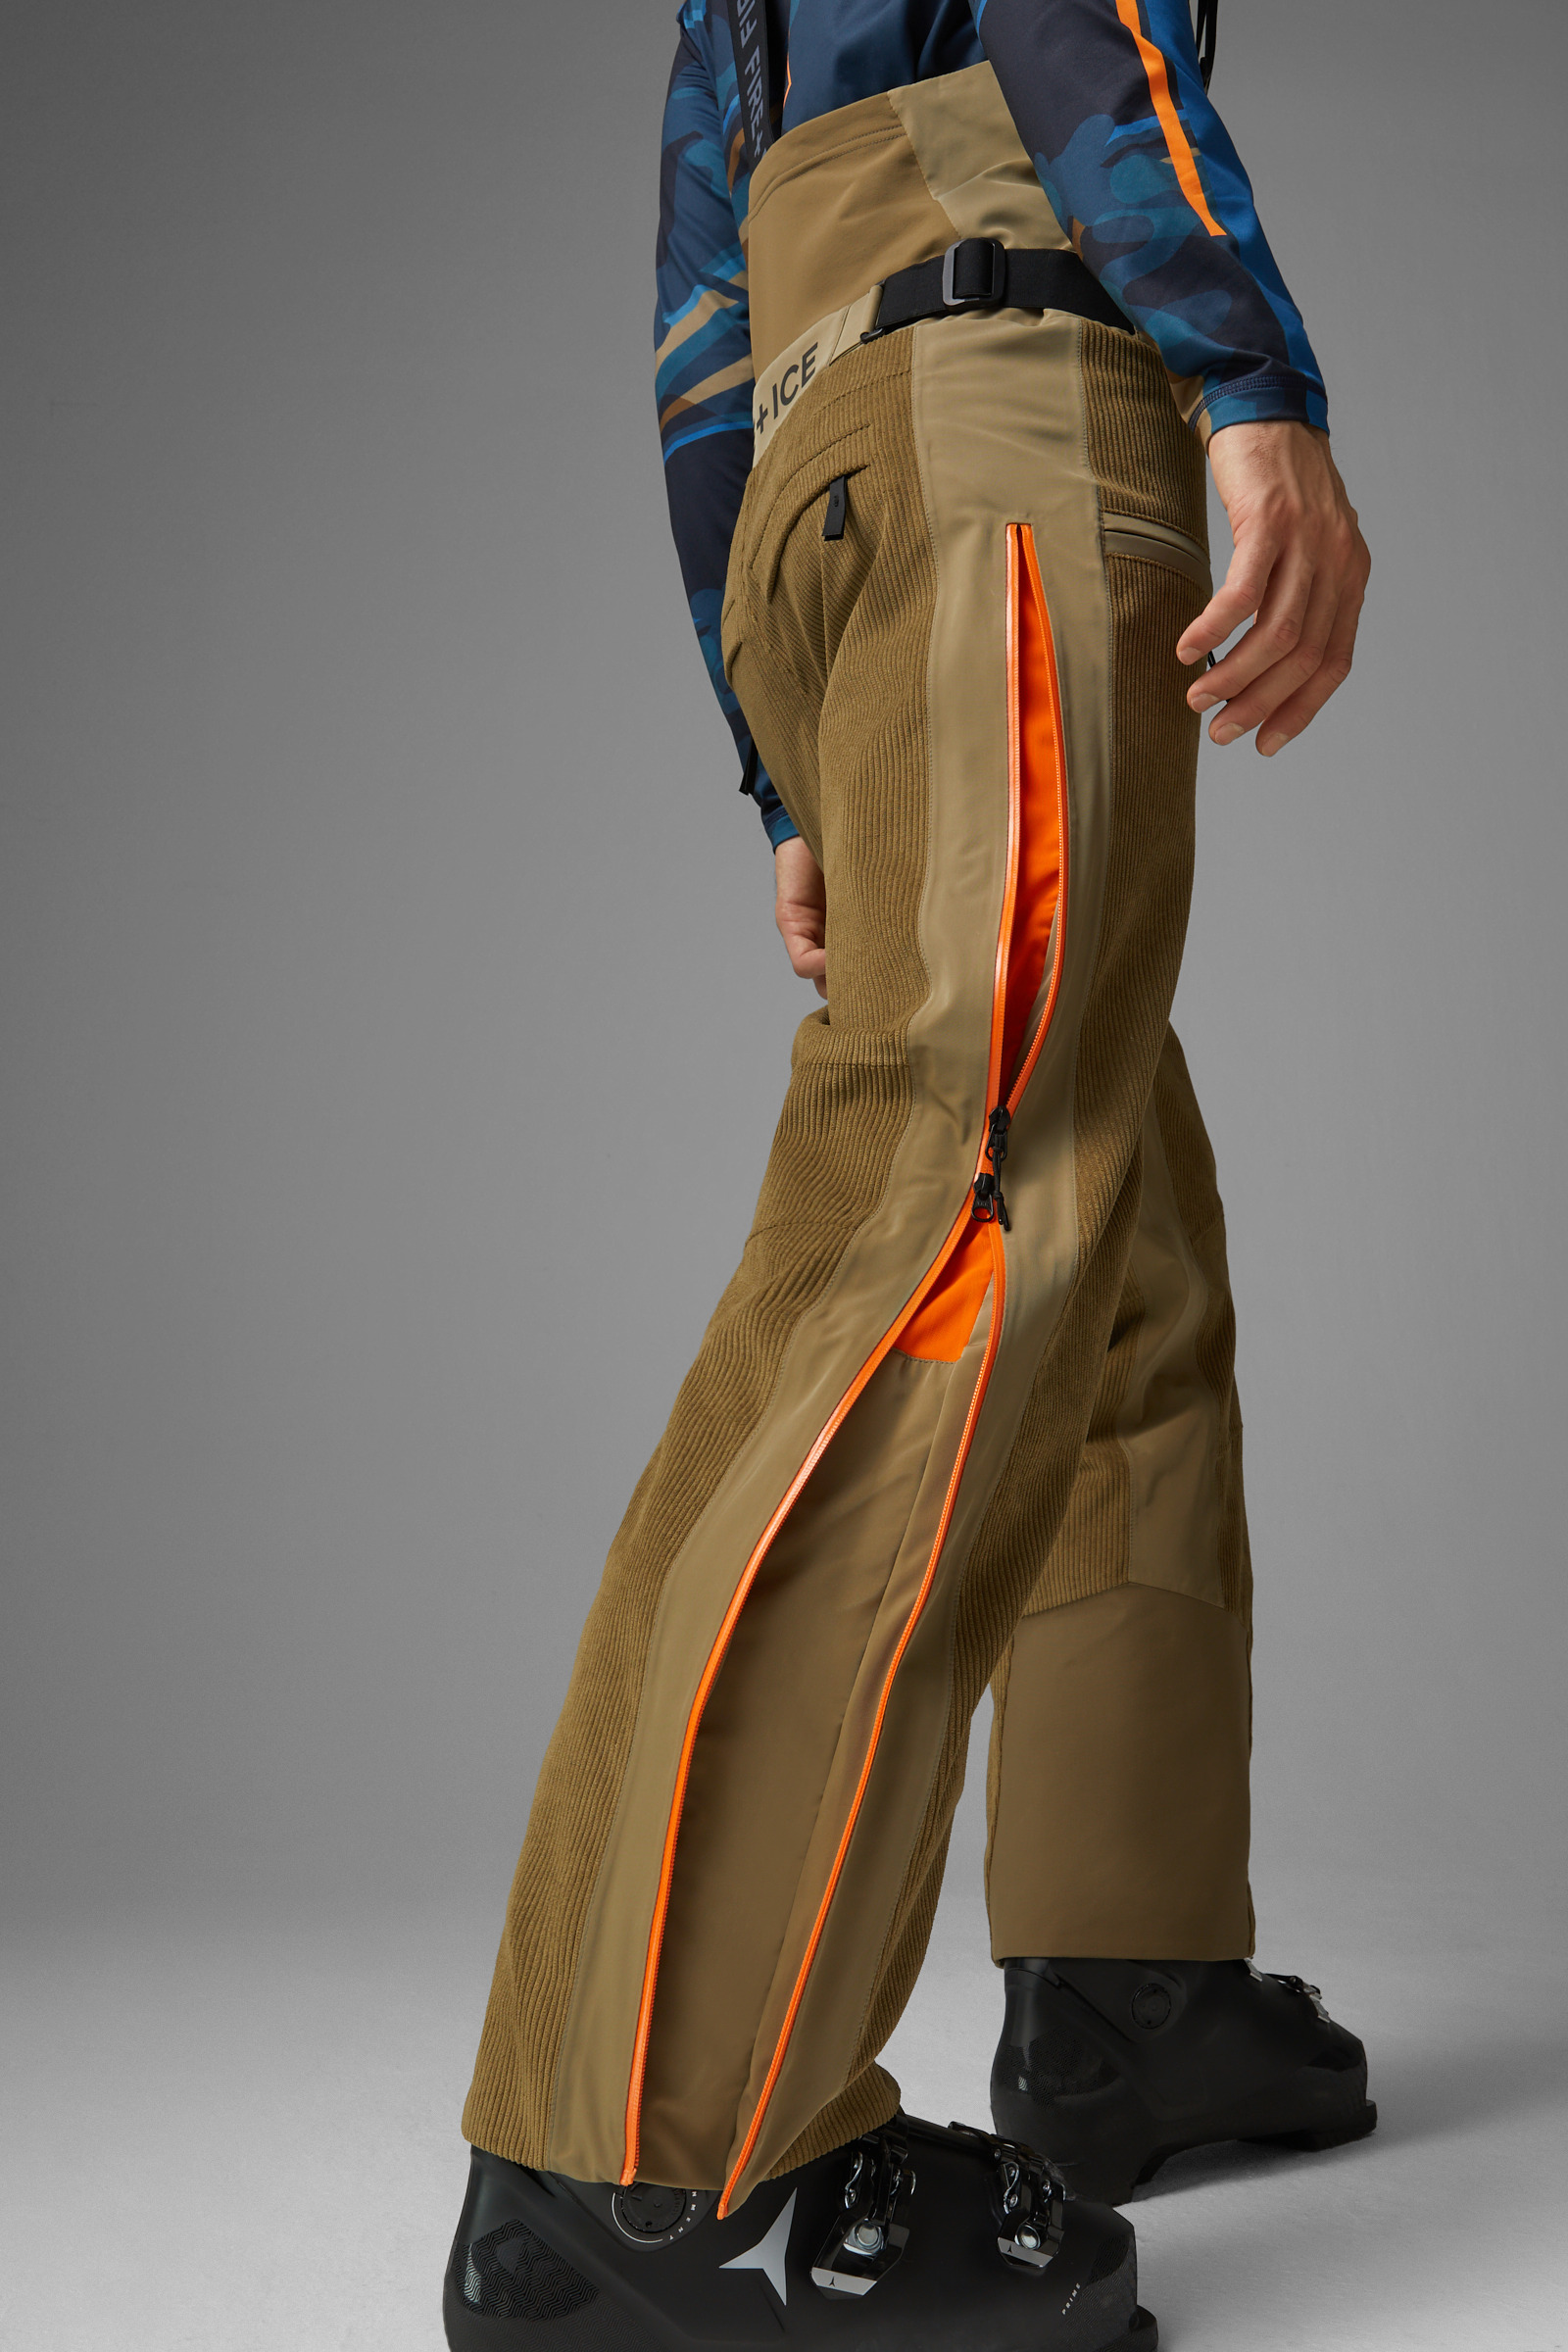 Napapijri Ski Suit Ski Pants Ski Trousers Warm Pant Snow Pants Winter  Skiing Clothing Mens Ski Pants Winter Trousers Vintage Pants Sport 